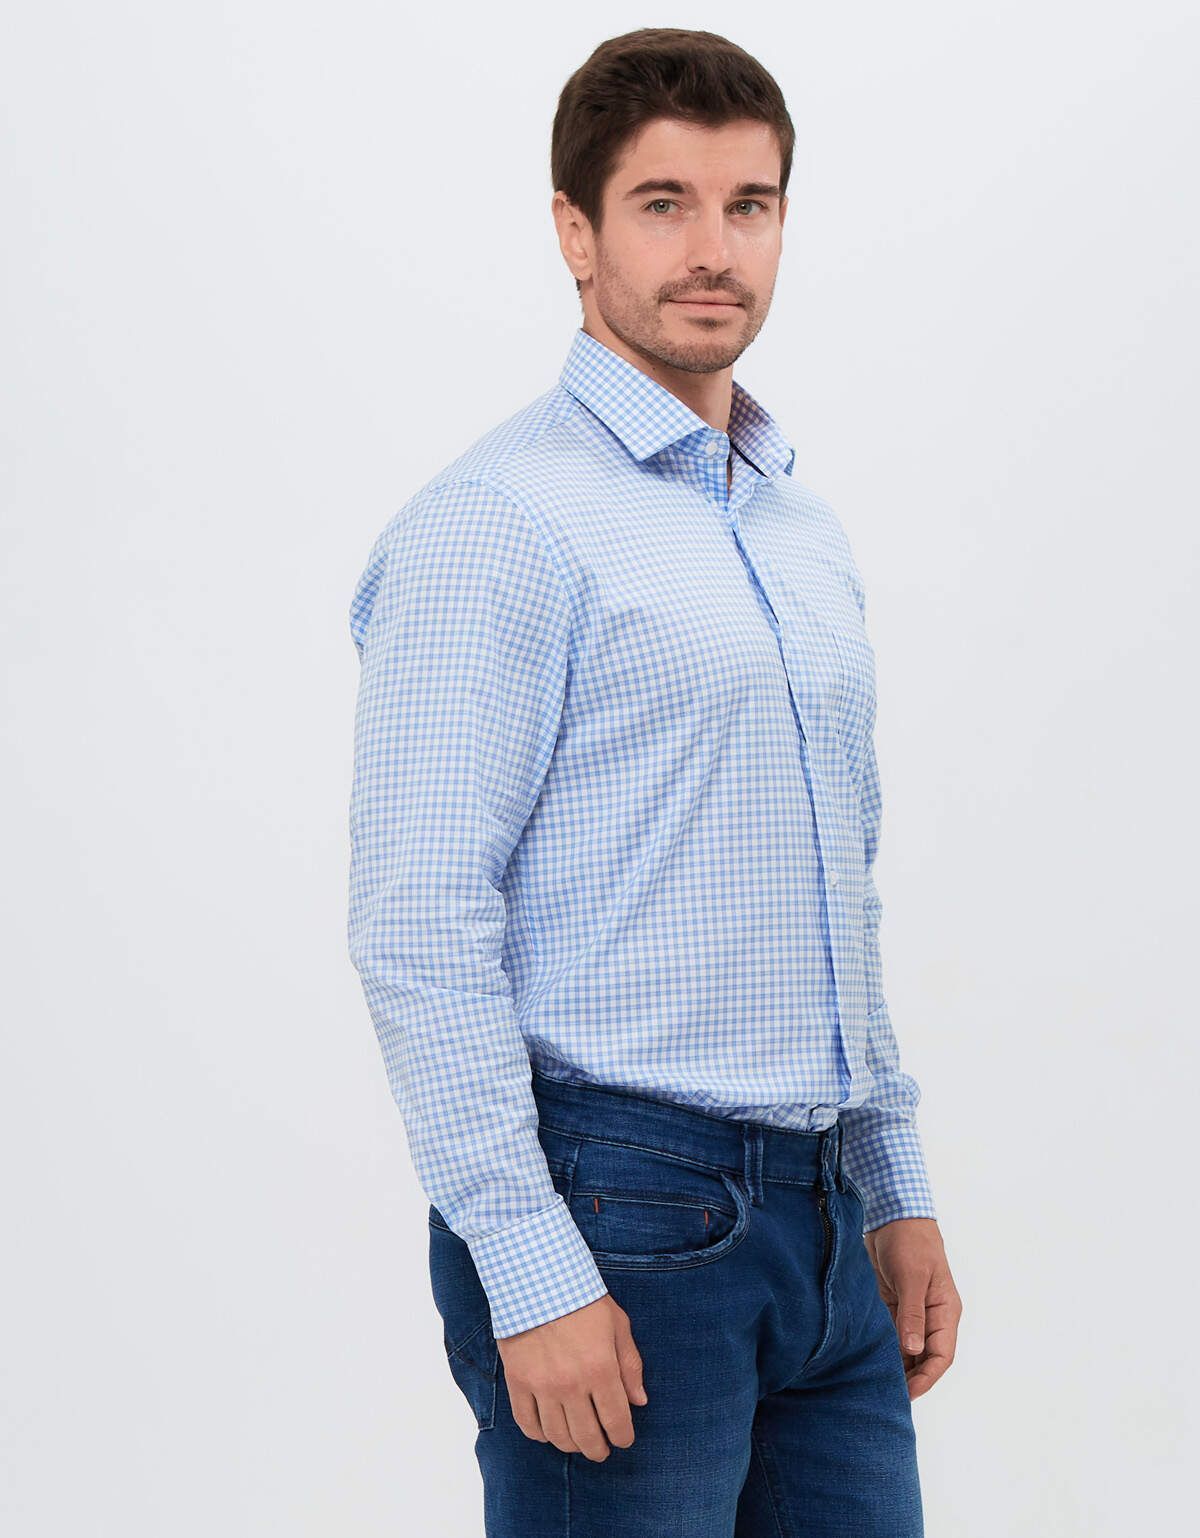 Рубашка мужская в клетку PLATIN, regular fit | интернет-магазин Olymp-Men